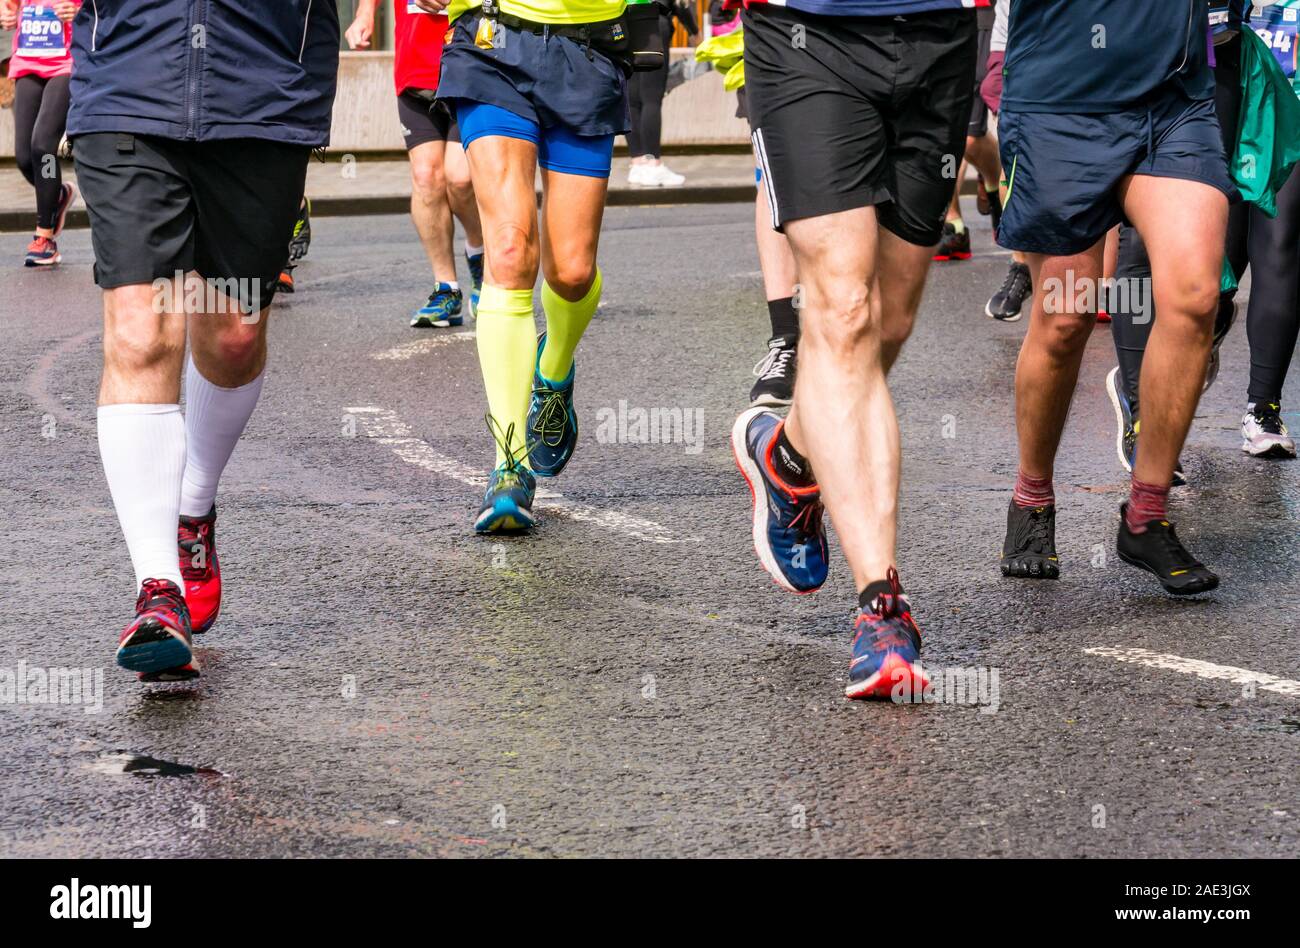 Close up porteur jambes pieds & chaussures de course sur piste mouillée, Edinburgh Festival Marathon 2019, Ecosse, Royaume-Uni Banque D'Images